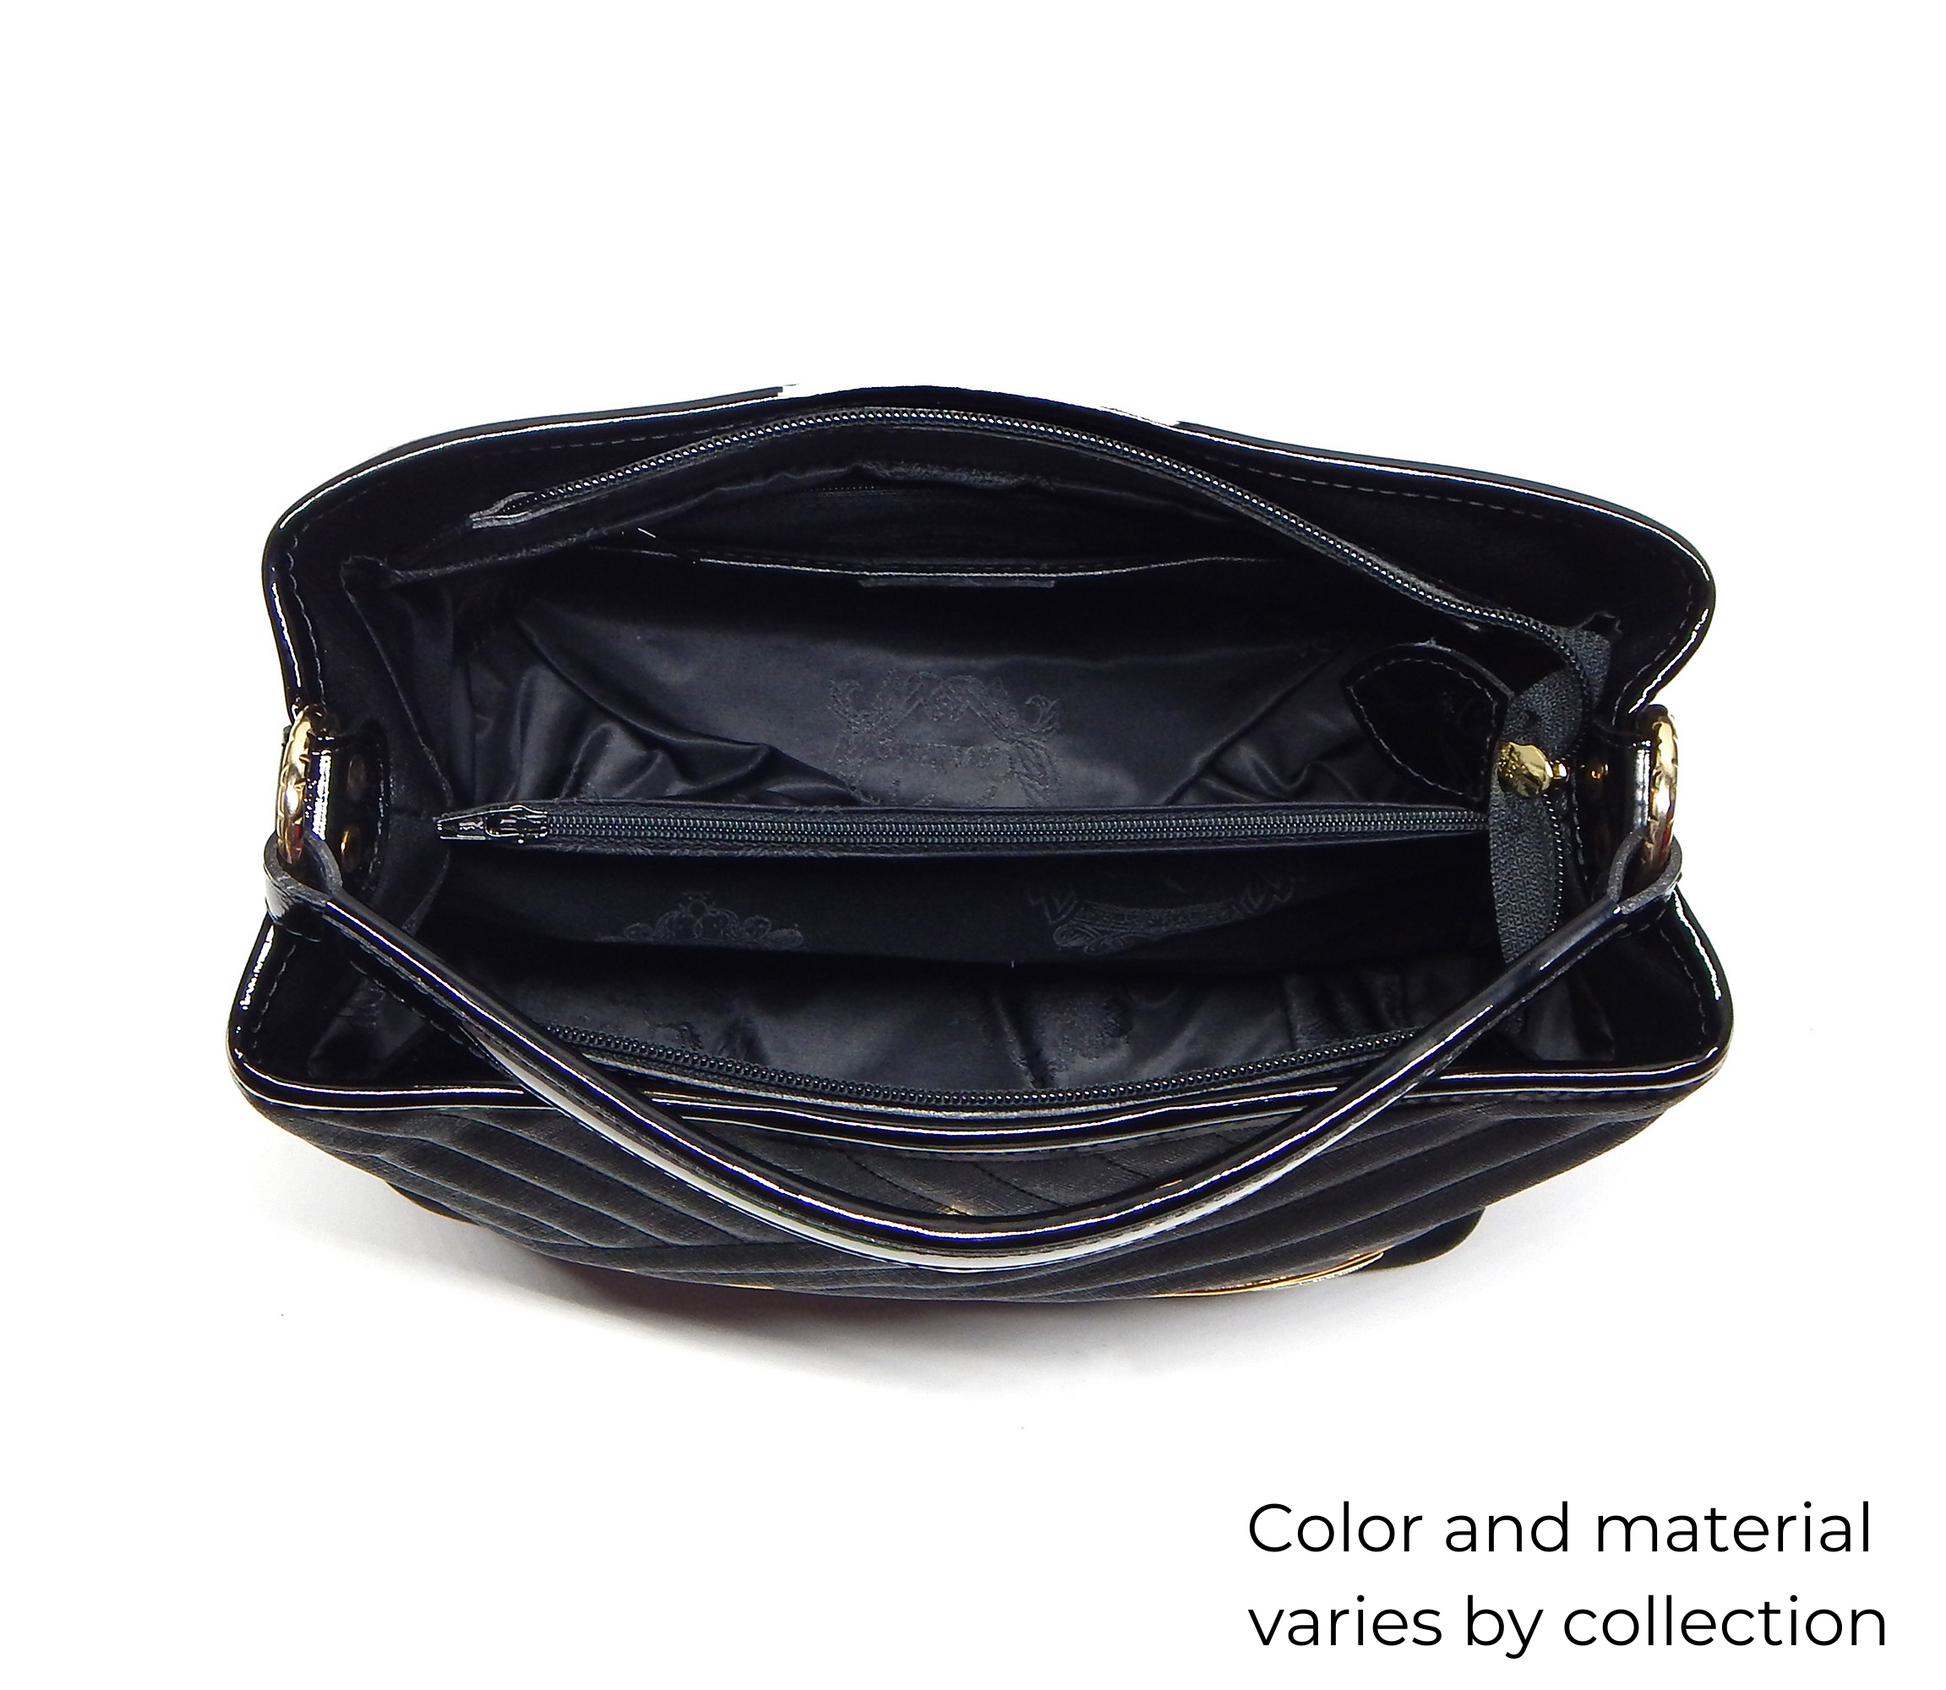 #color_ Black SaddleBrown White | Cavalinho Unique Handbag - Black SaddleBrown White - inside_0157_5efac9cd-091b-4a6f-b1a1-9a0320b780e3